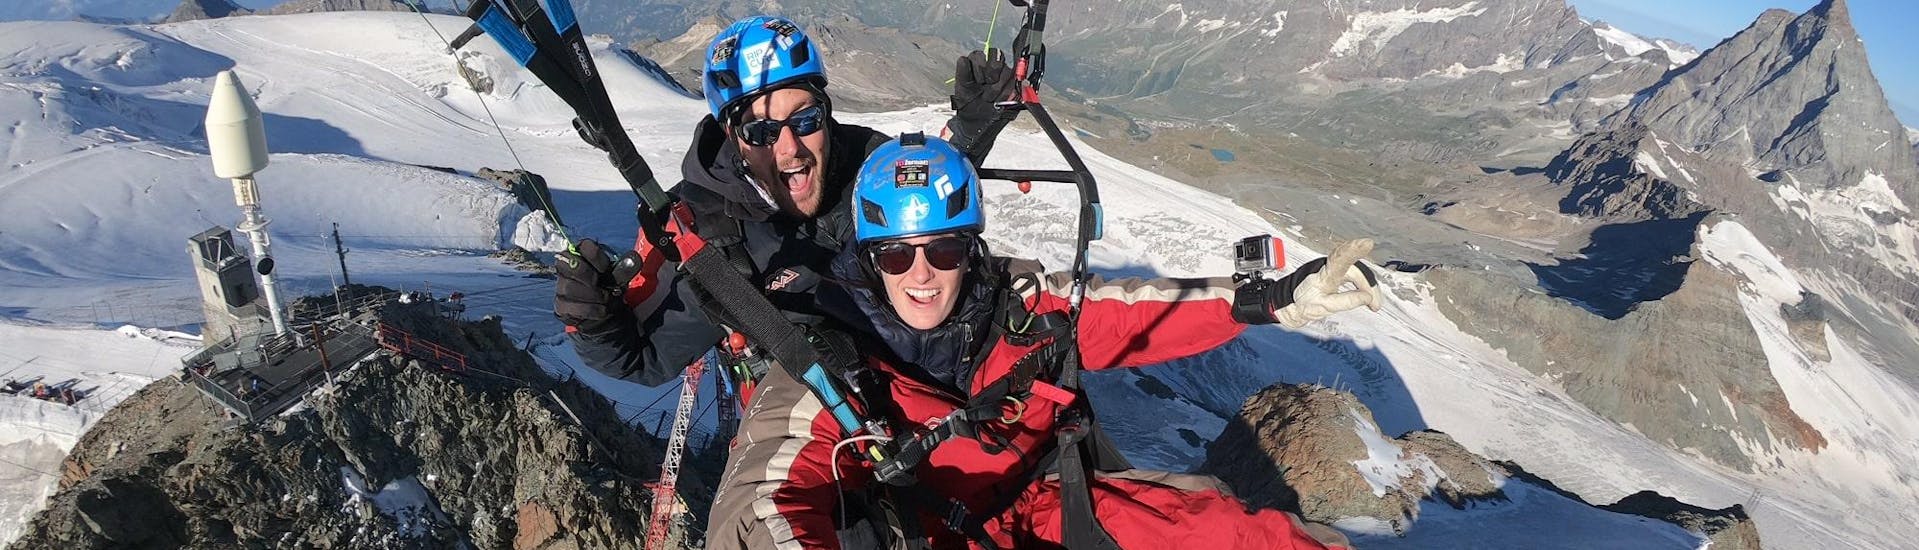 Un equipo de Matterhorn Paragliding sobre los glaciares cerca de Zermatt.